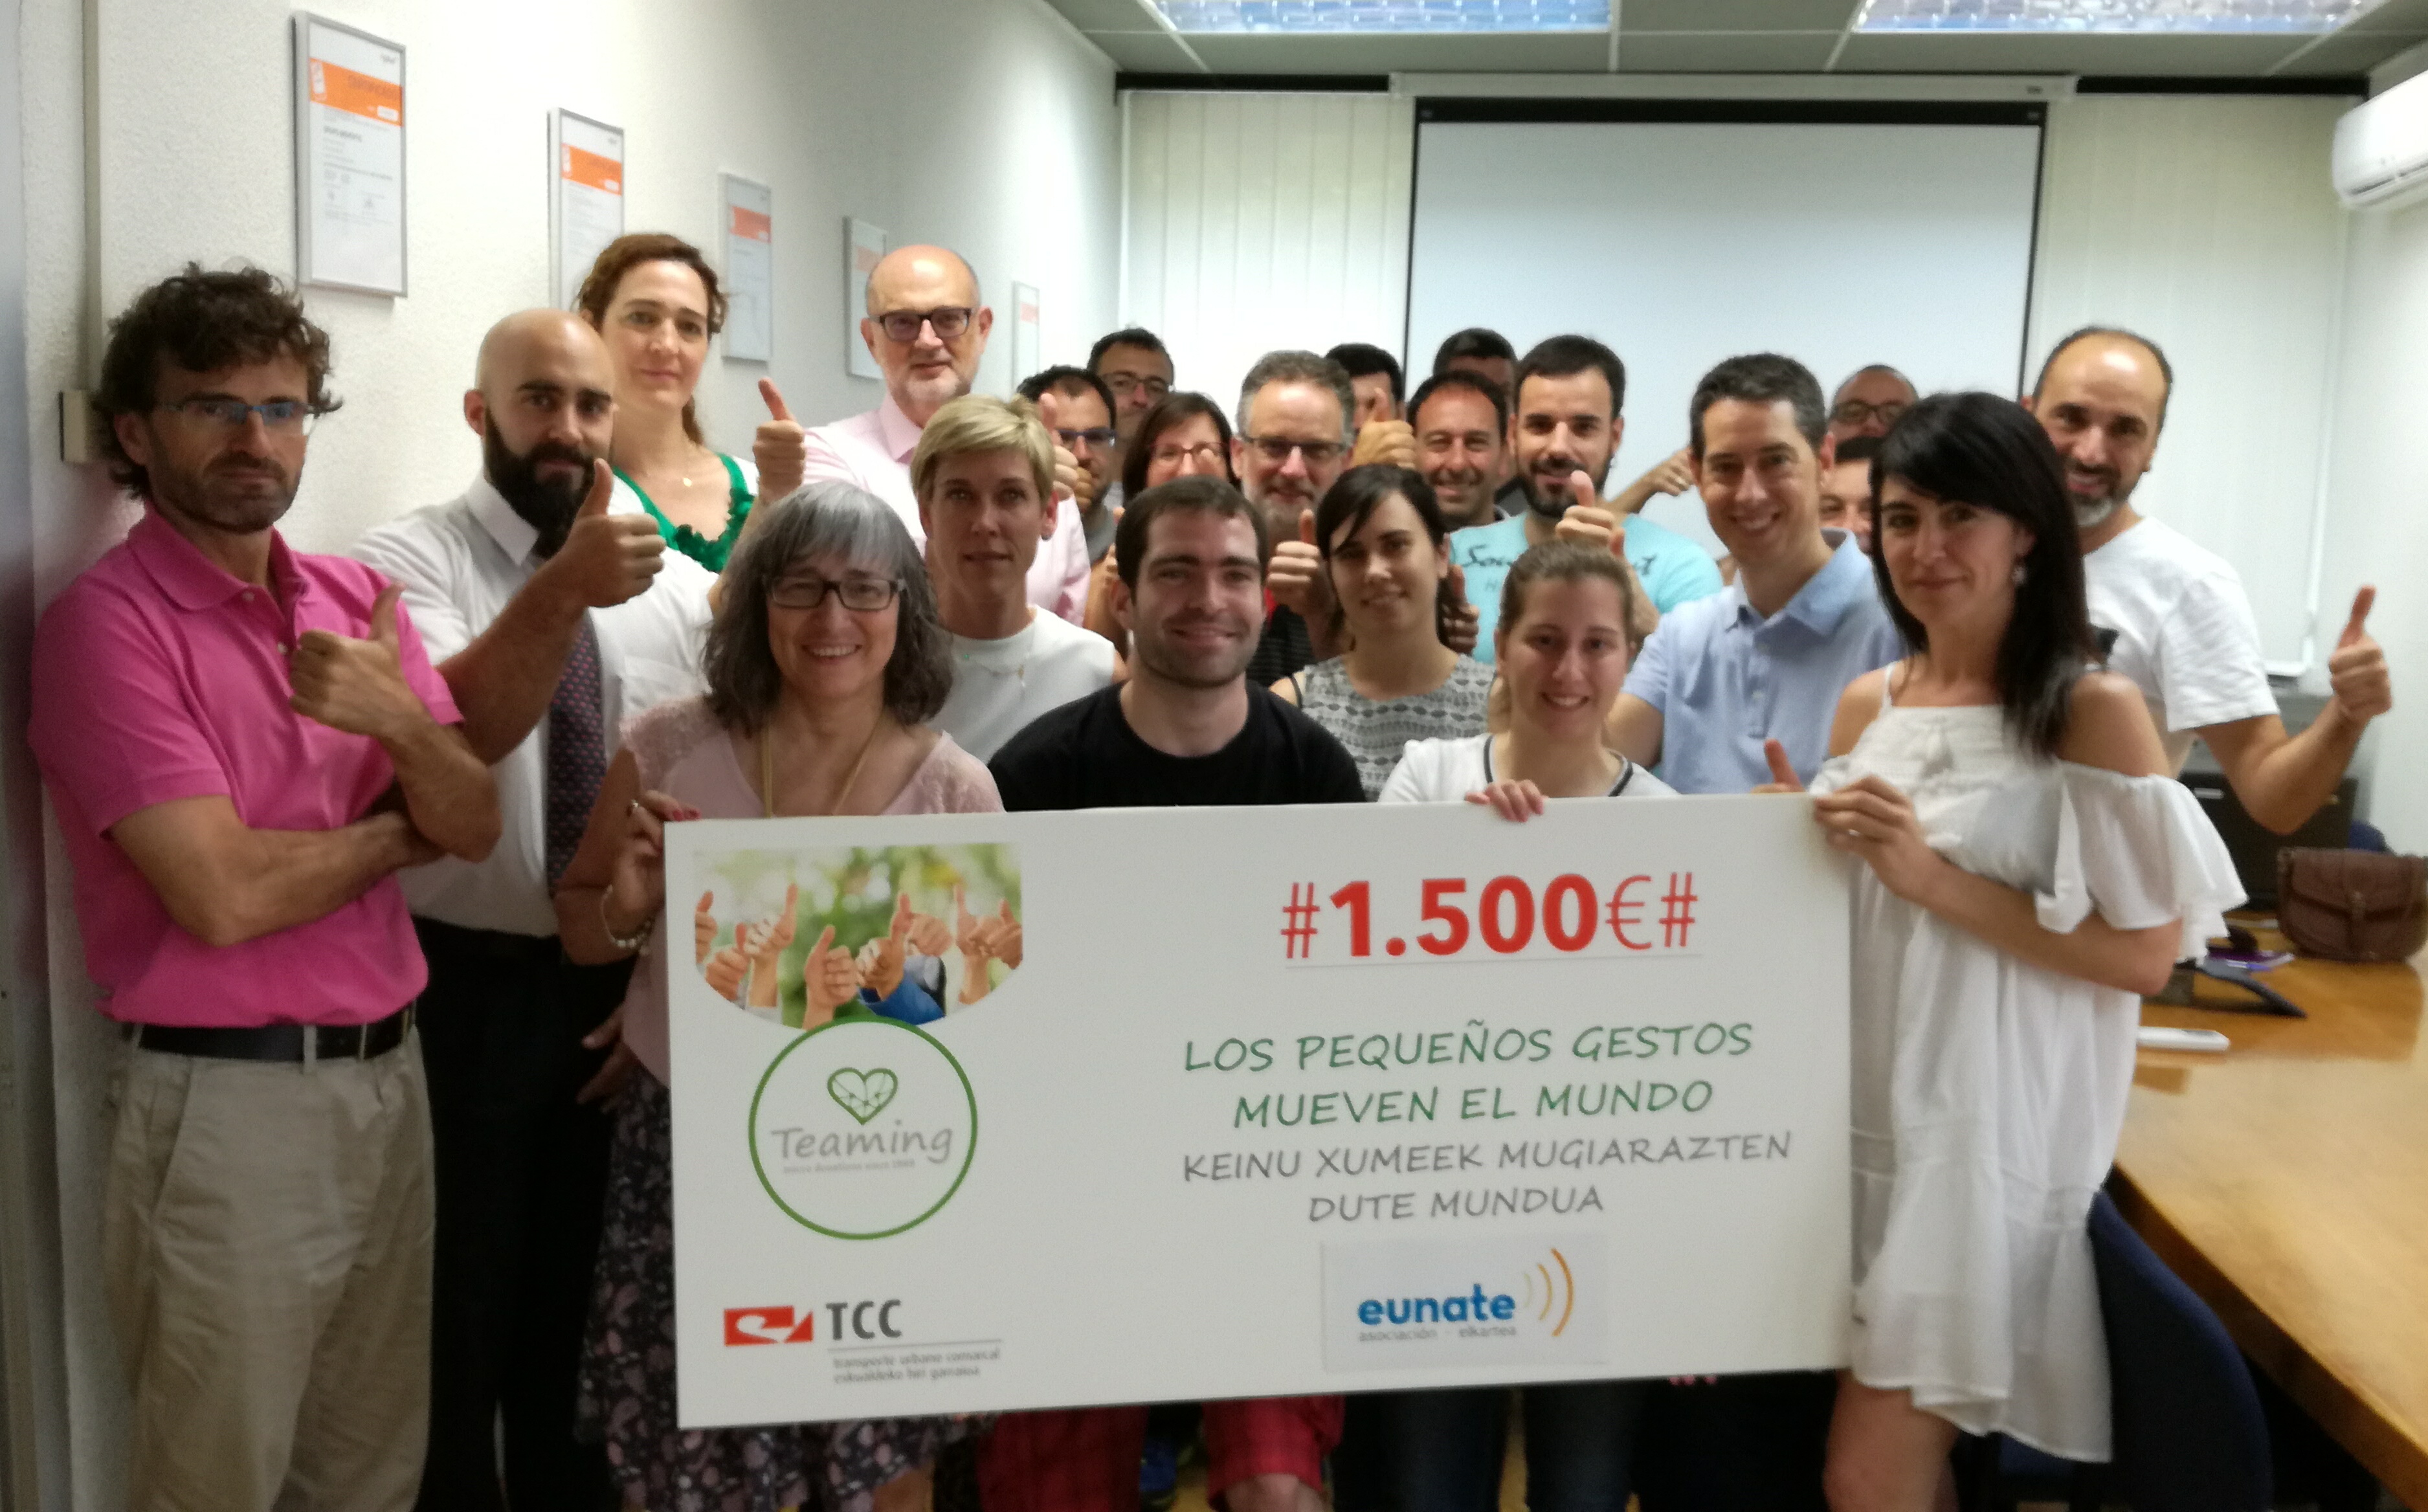 El Teaming de TCC Pamplona destina 1.500 euros a la Asociación Eunate Elkartea